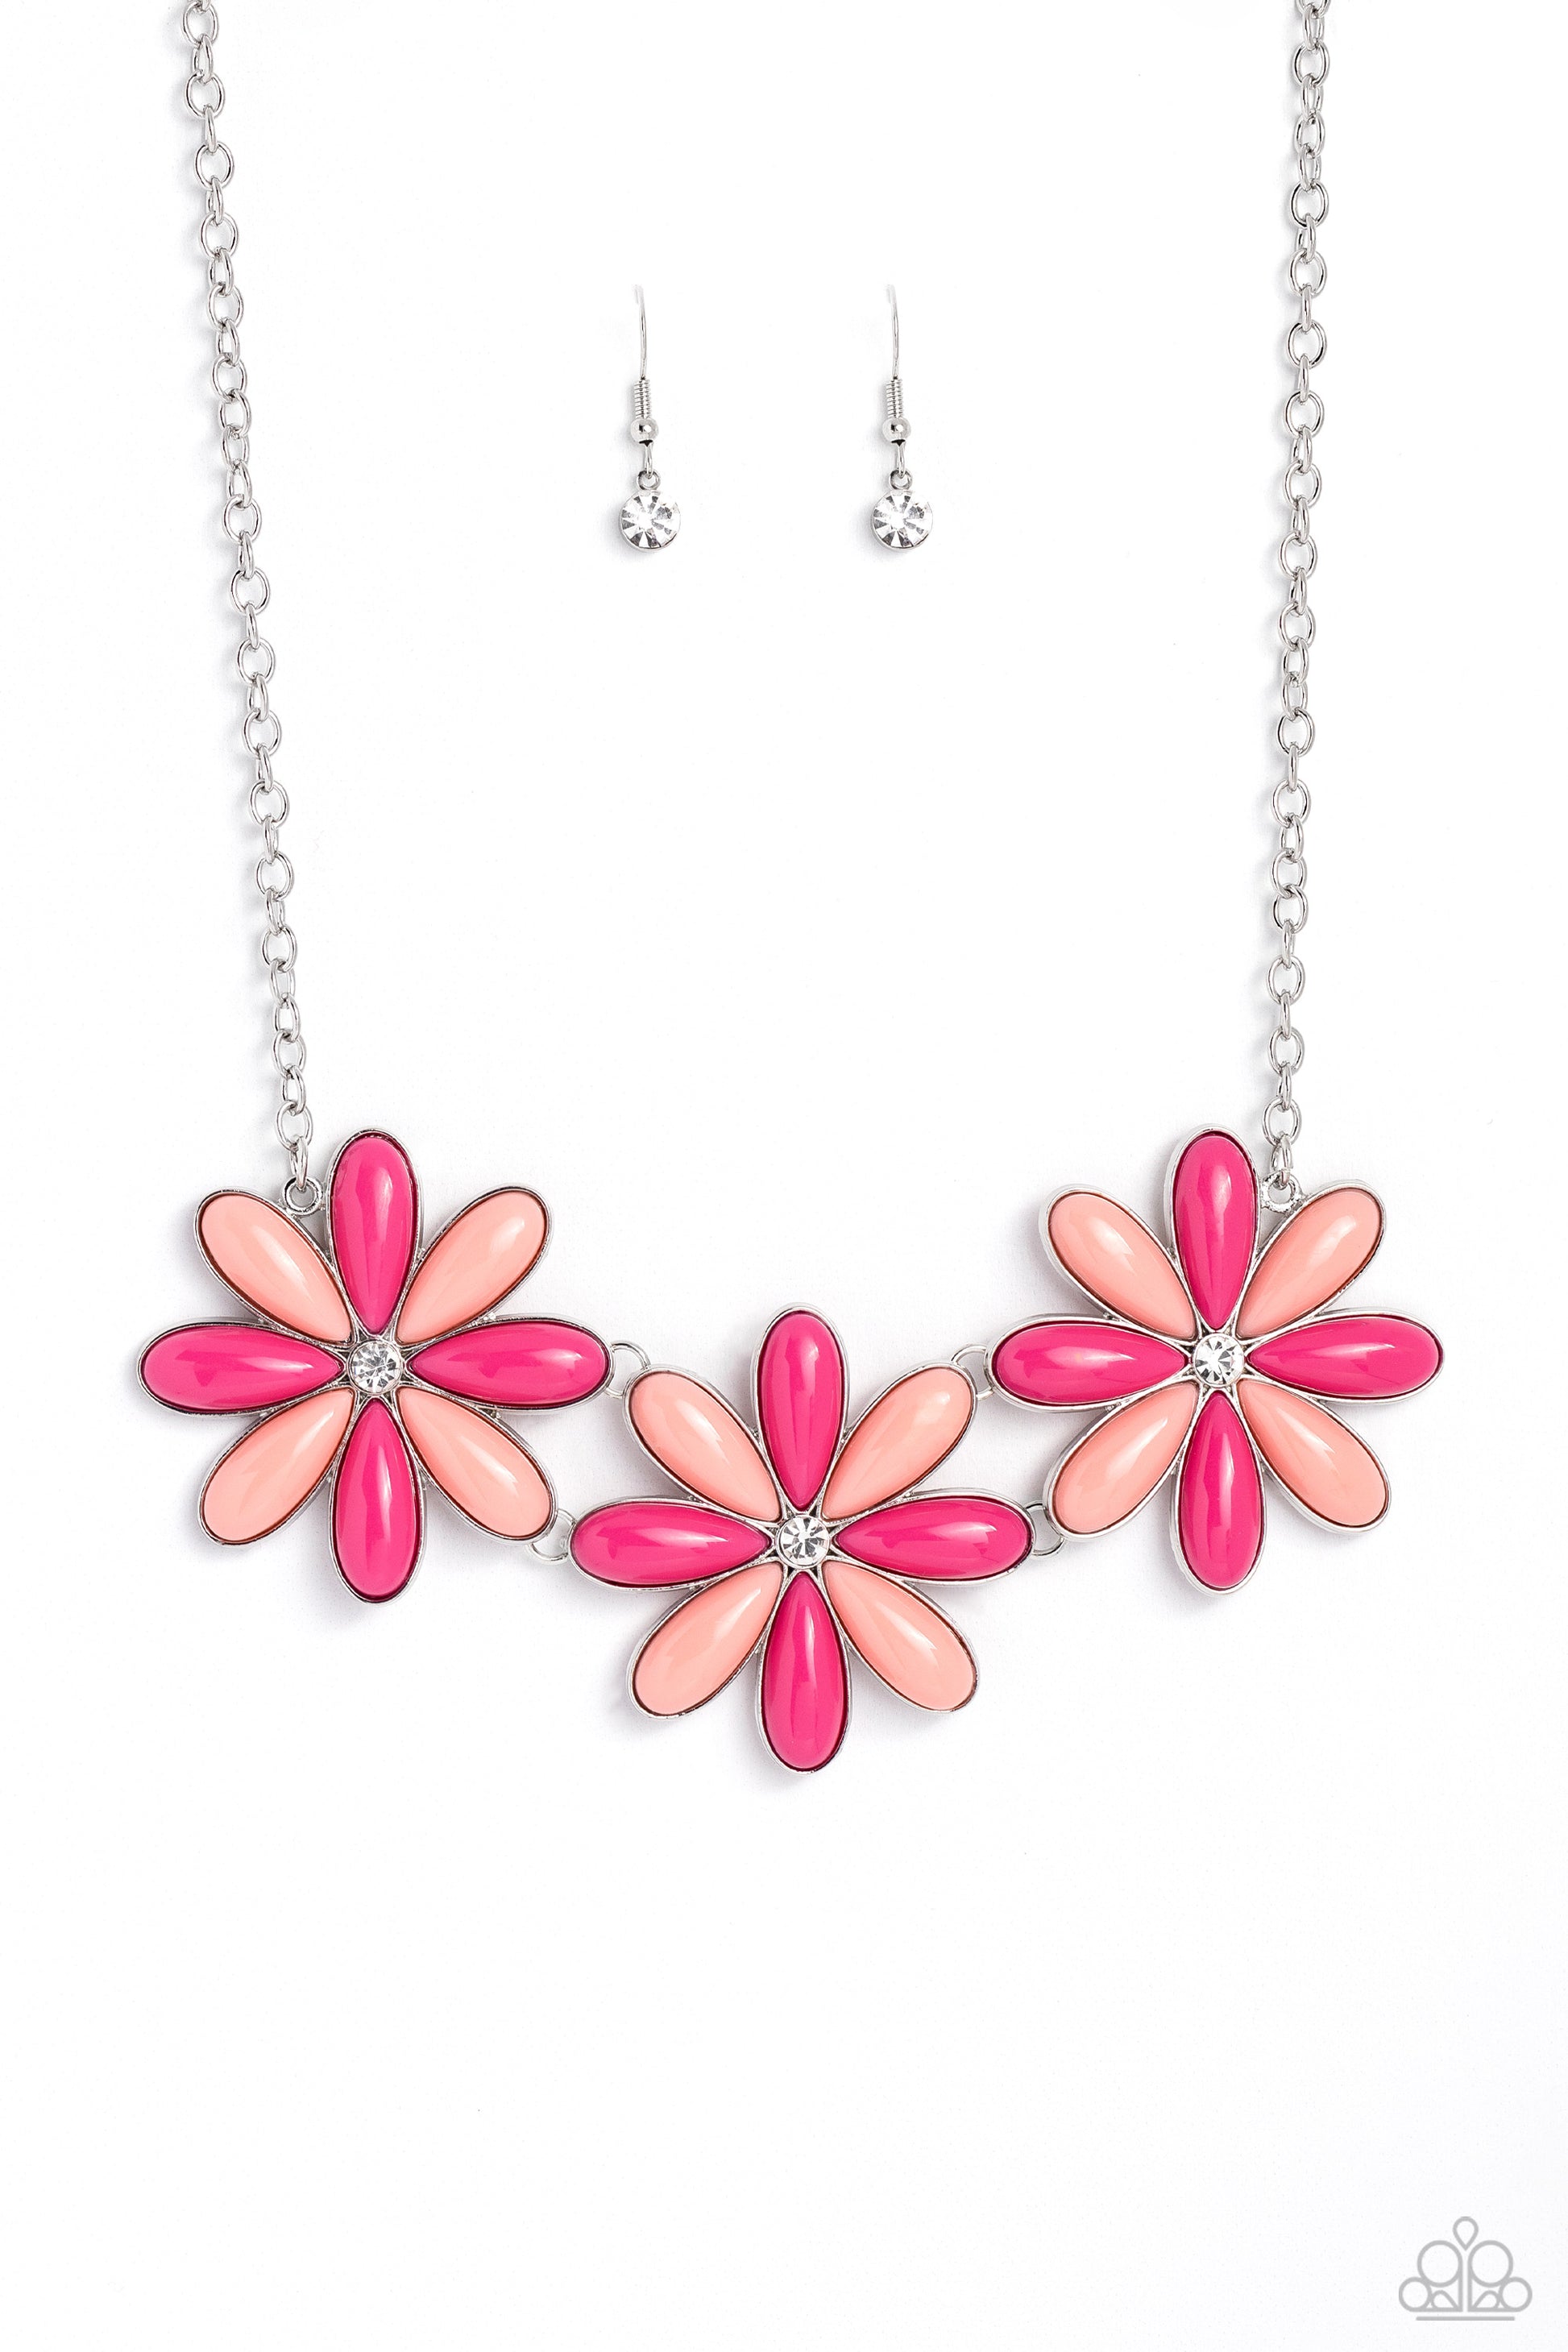 Bodacious Bouquet - pink - Paparazzi necklace